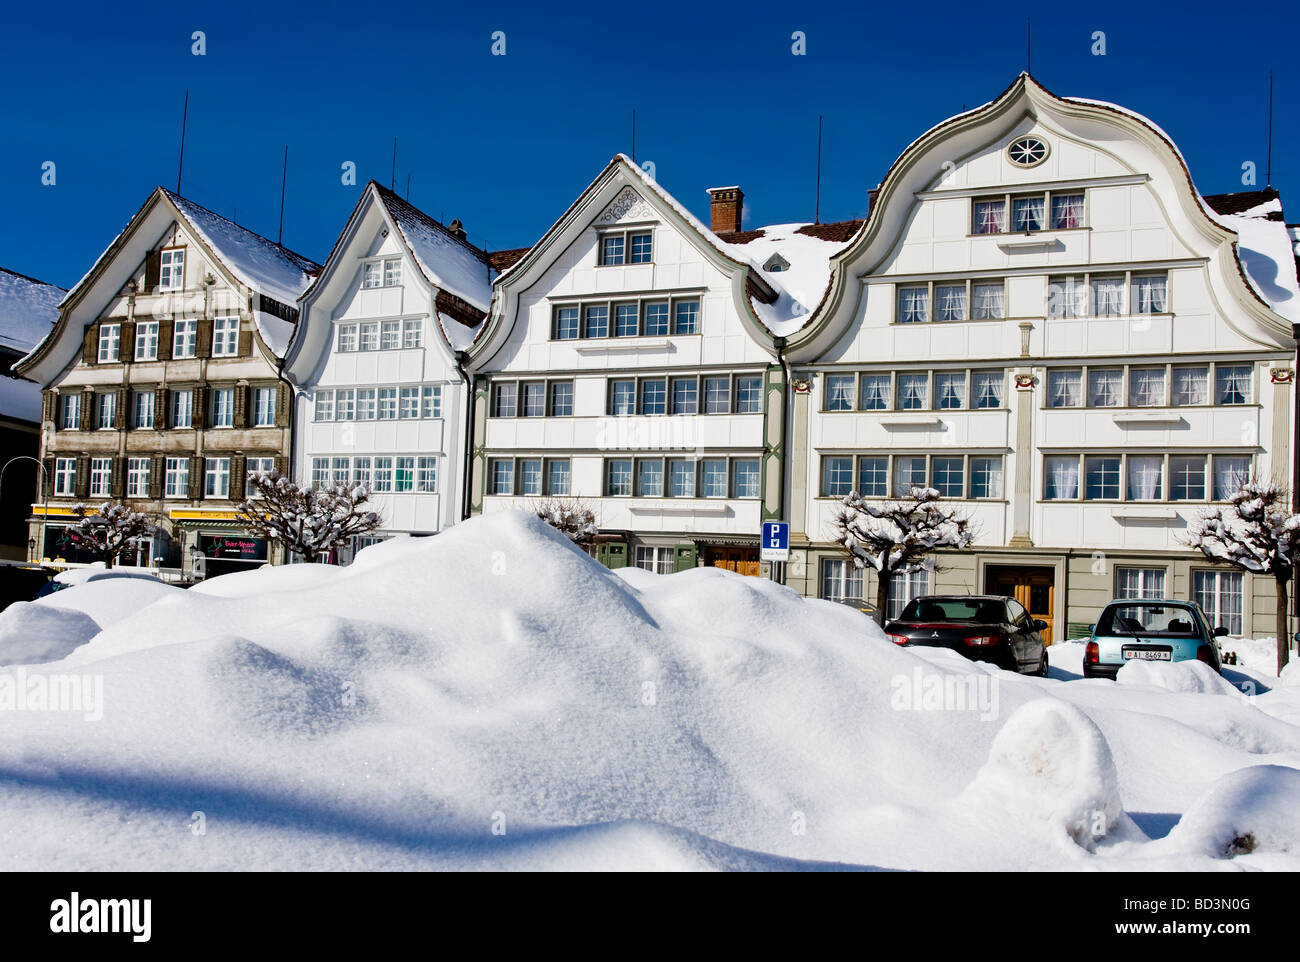 Winter view of Gais Appenzell Ausserrhoden village, Switzerland Stock Photo